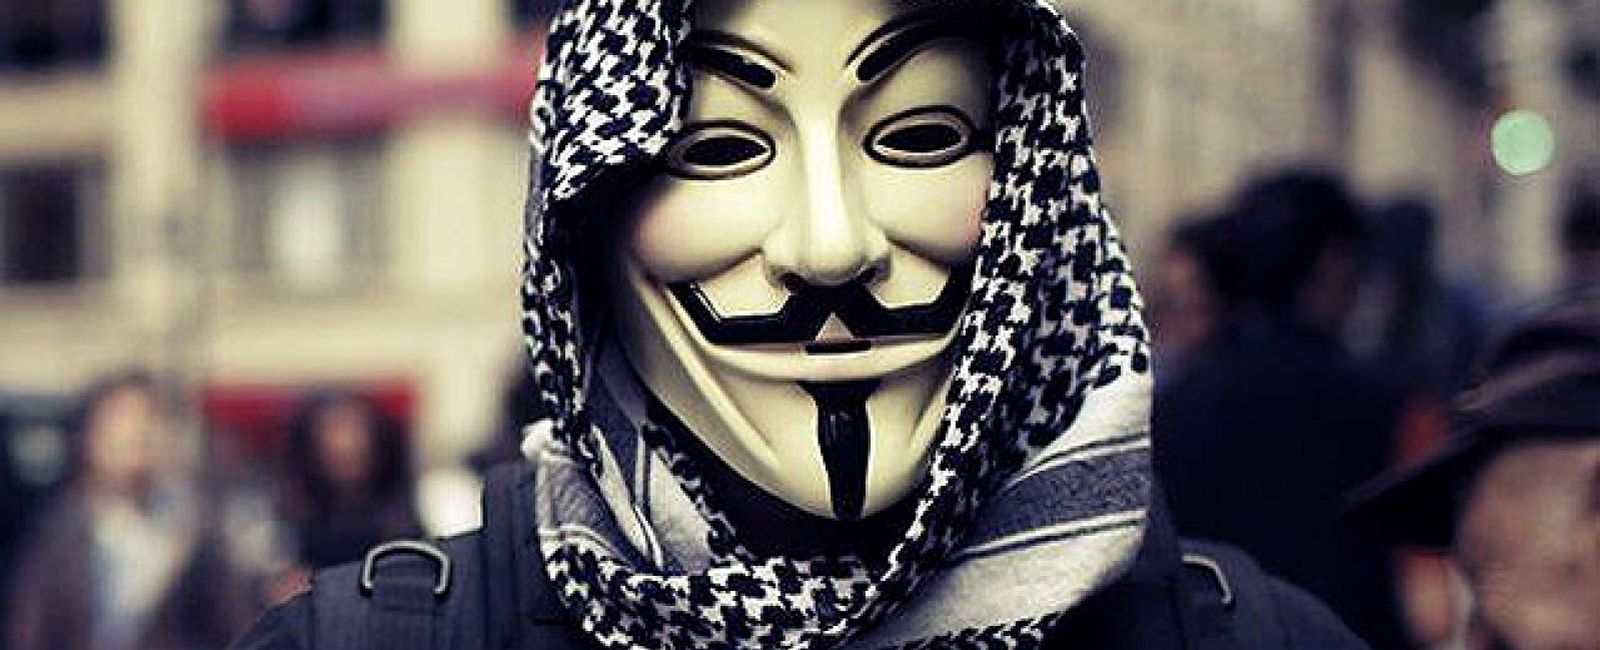 Foto: Anonymous orquesta la 'respuesta digital' a Israel por matar palestinos